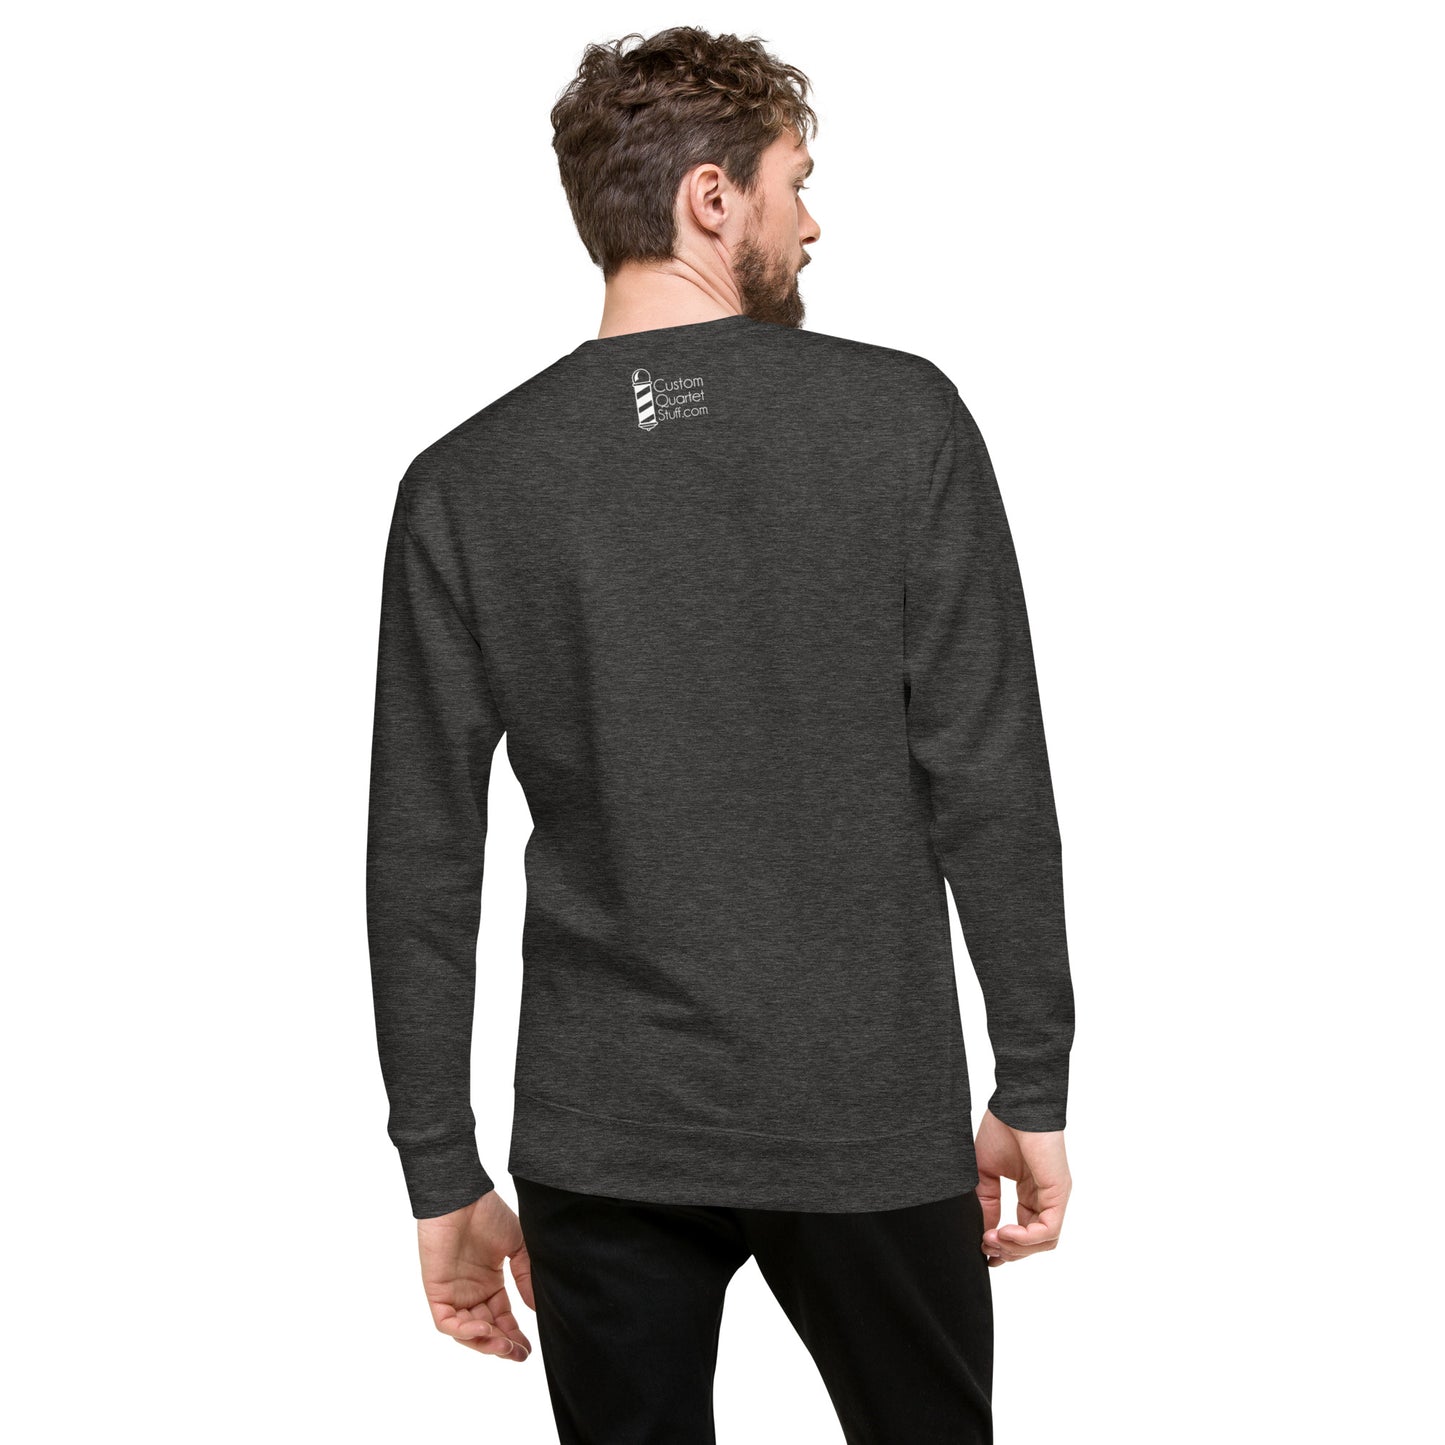 Music City Chorus - Printed Unisex Premium Sweatshirt